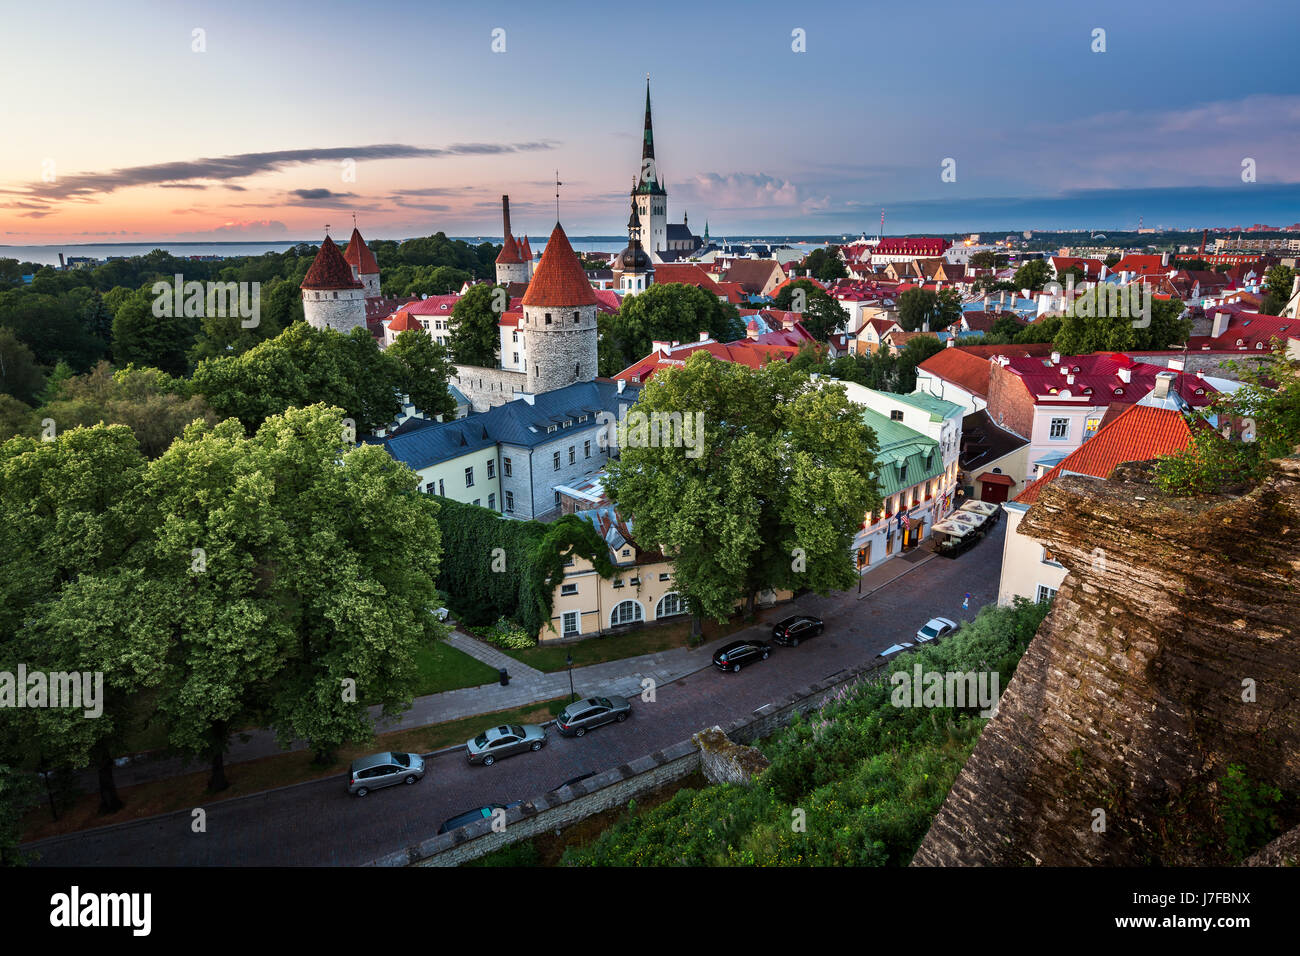 Vue aérienne de la vieille ville de Tallinn à partir de la colline de Toompea dans la soirée, Tallinn, Estonie Banque D'Images